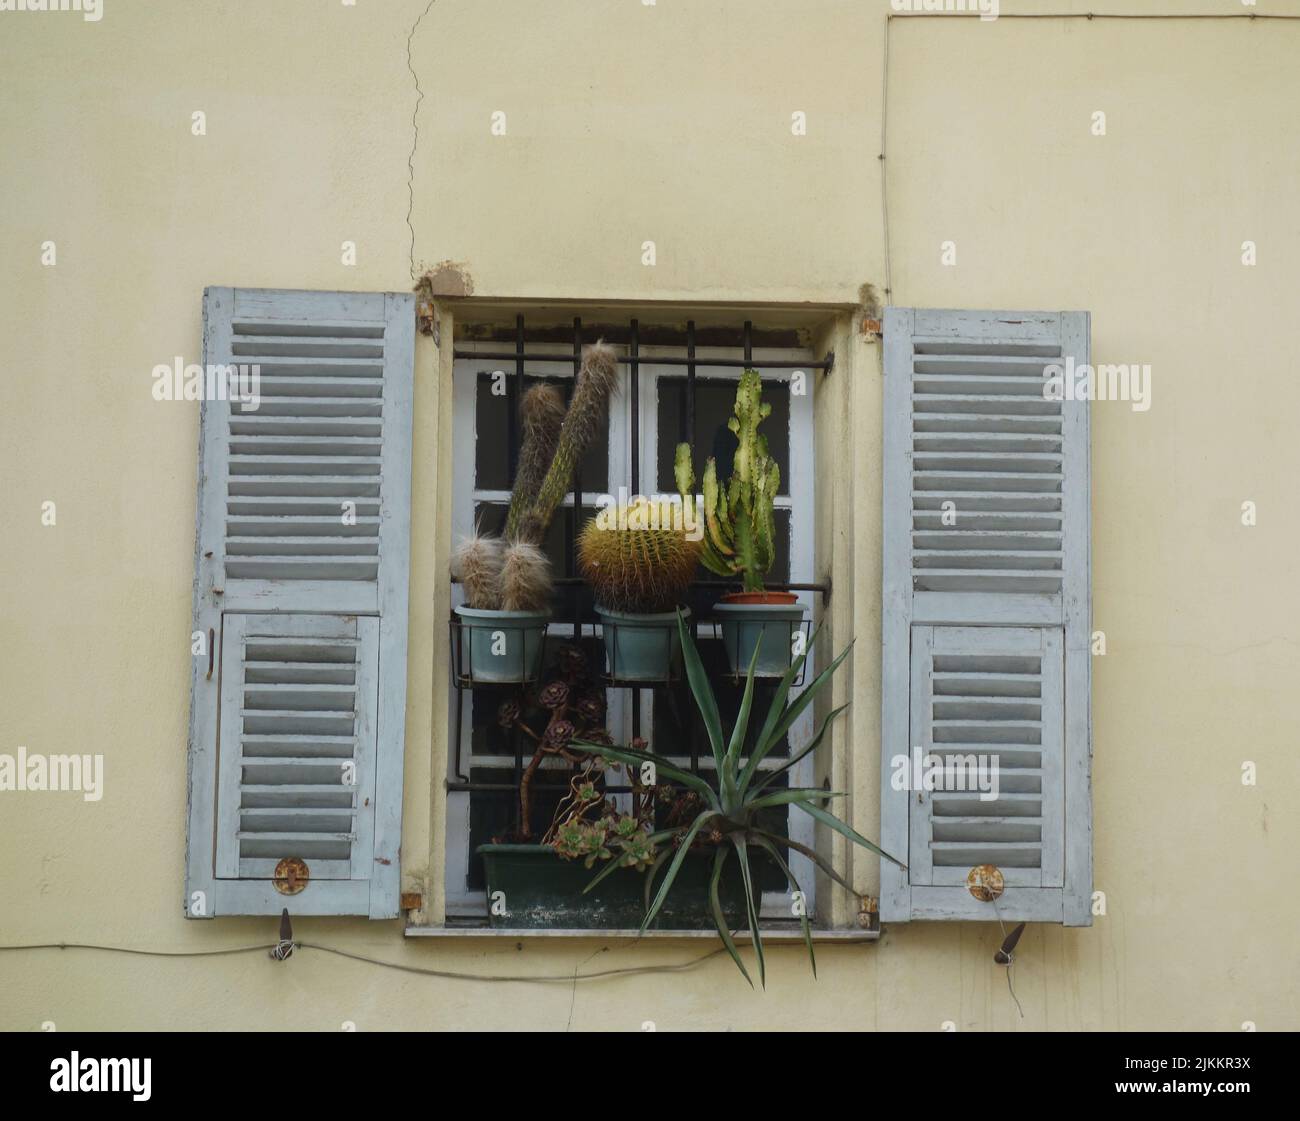 Eine schöne Aufnahme von Pflanzen, die an einem Fenster hängen Stockfoto